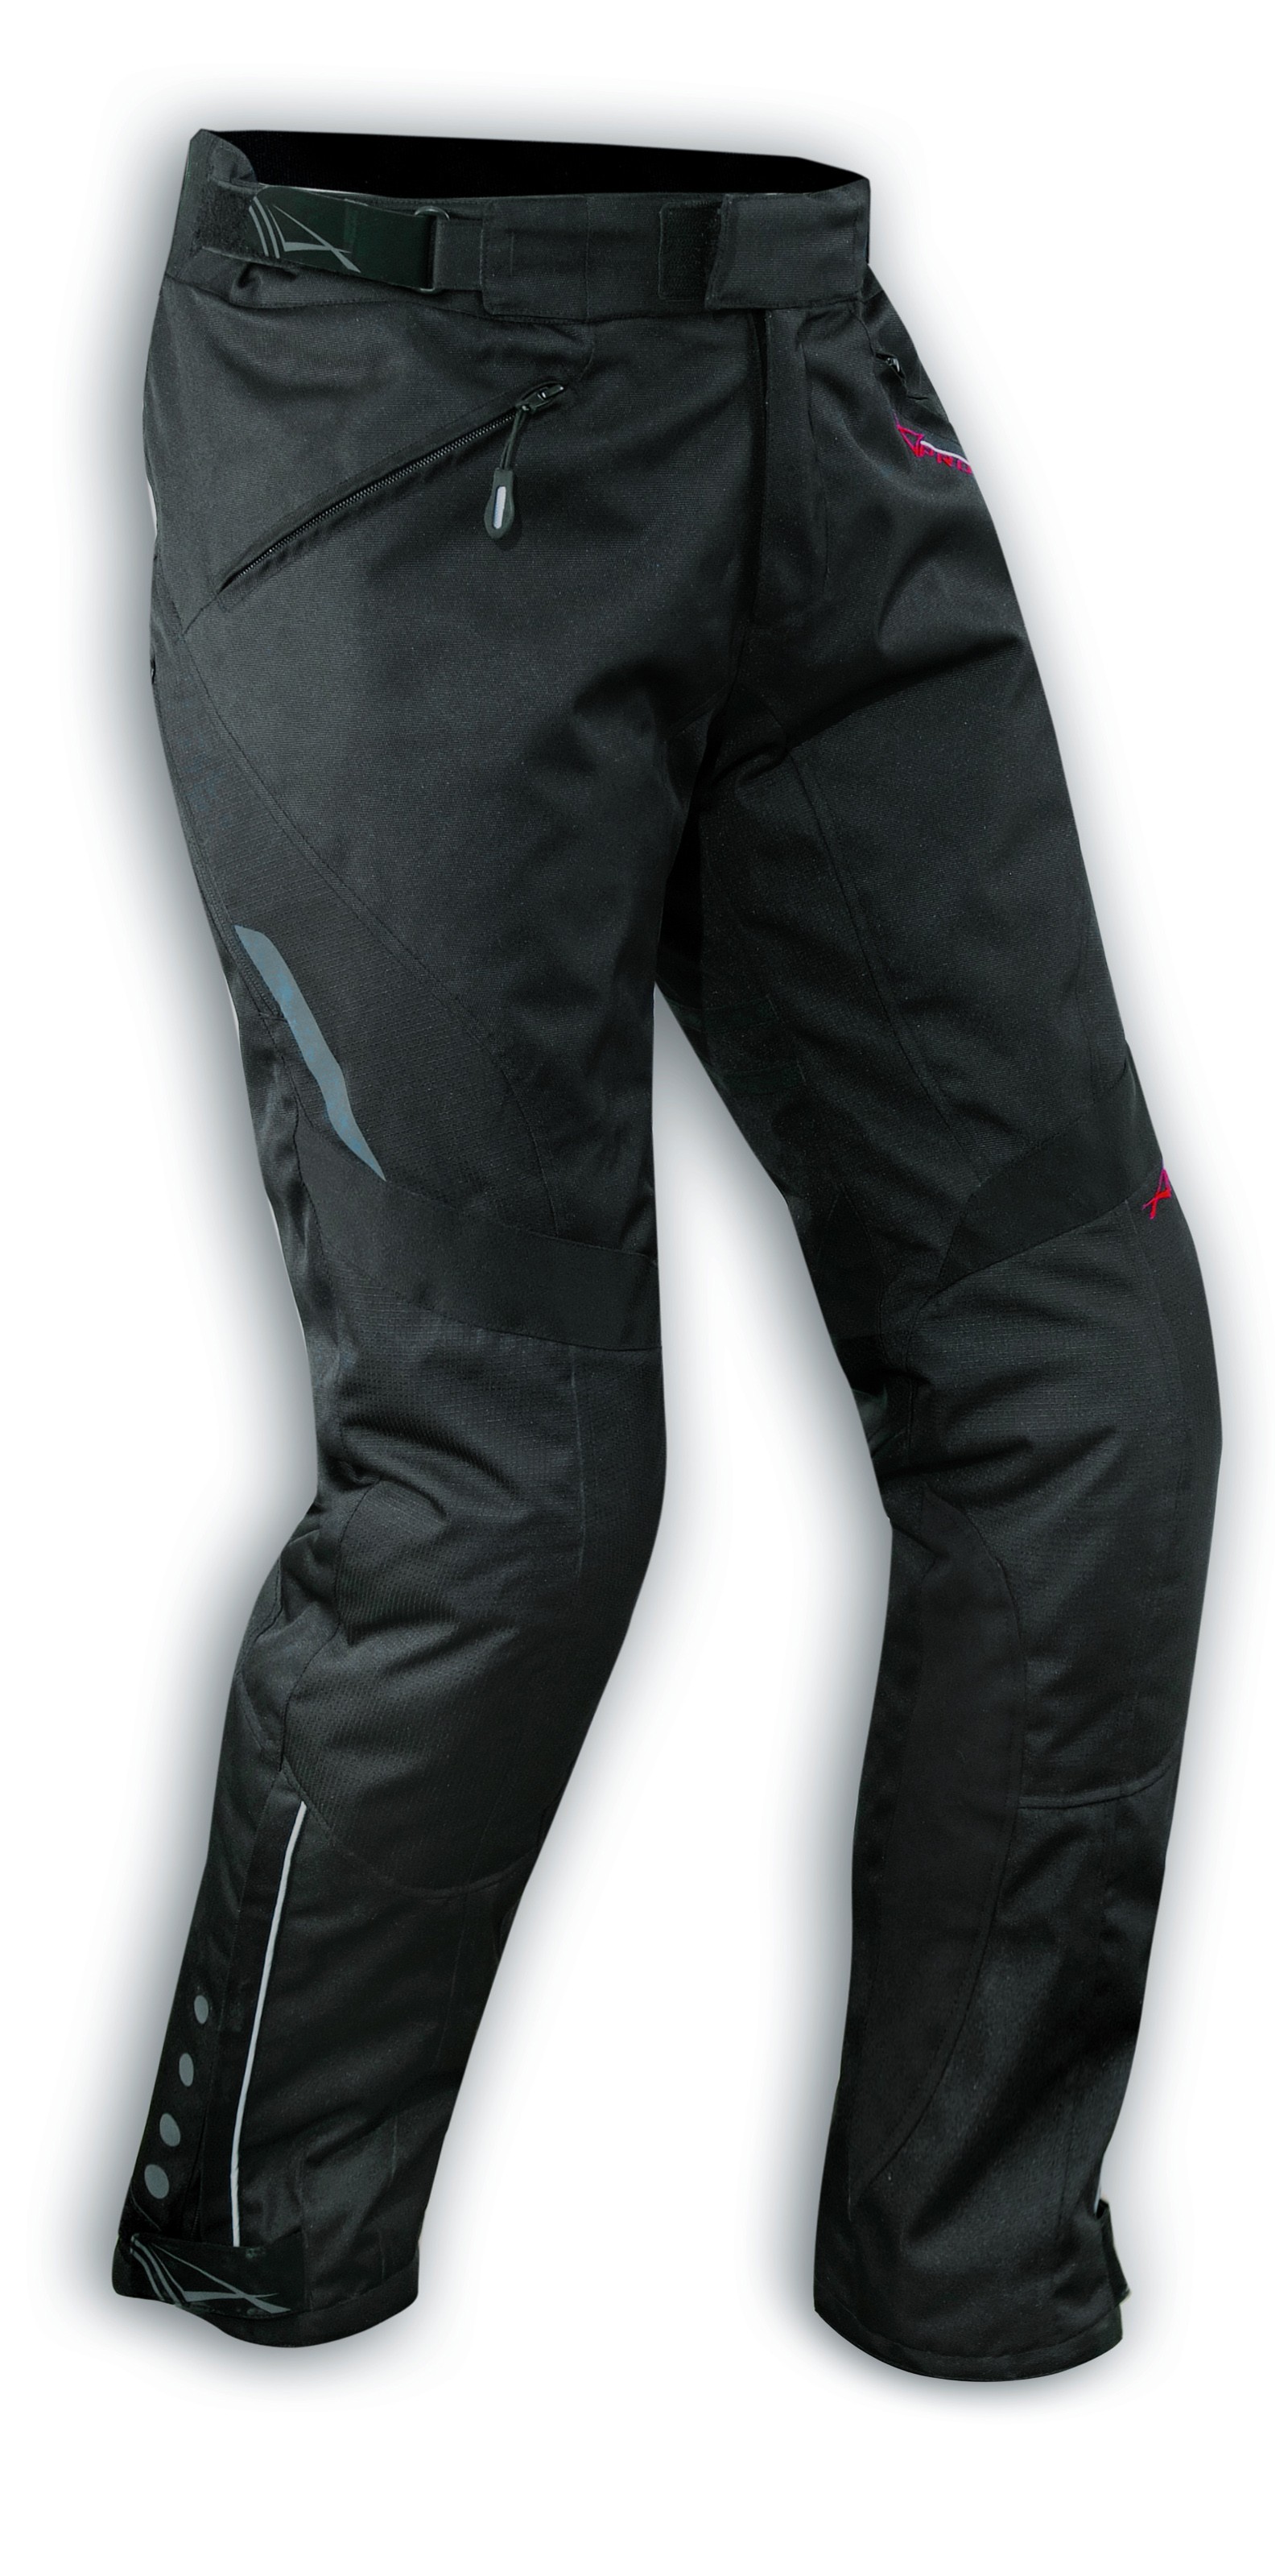 Pantaloni moto Yamaha Adventute uomo (grigio / nero)